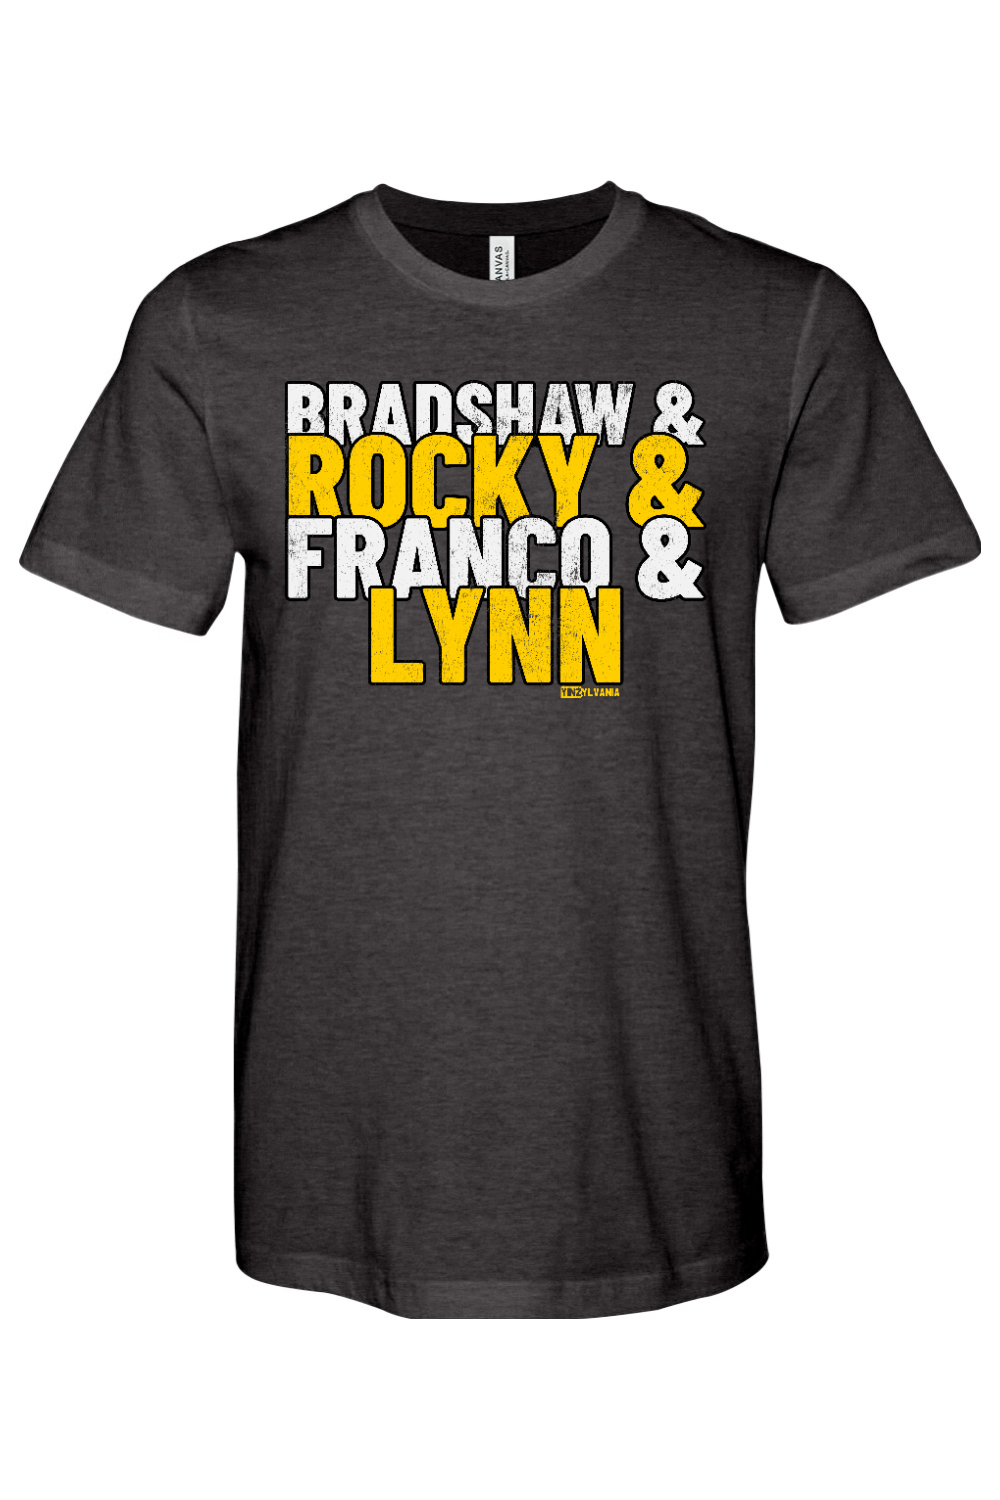 Bradshaw & Rocky & Franco & Lynn - Yinzylvania